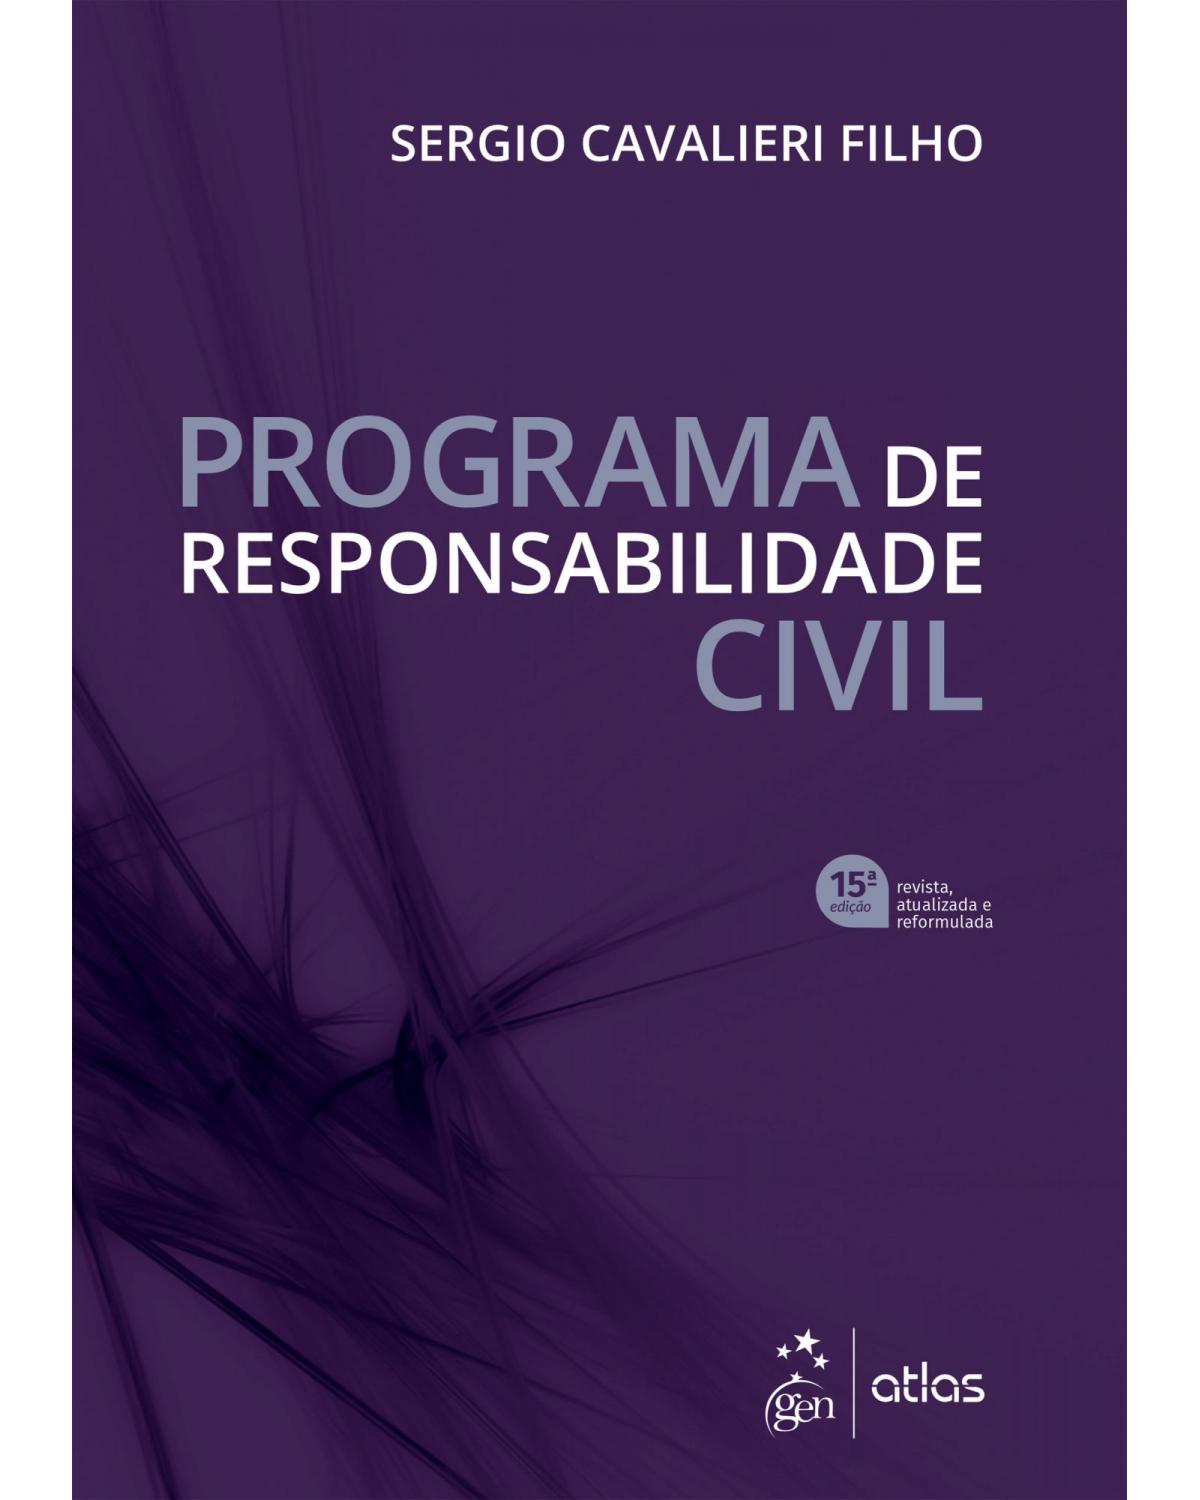 Programa de responsabilidade civil - 15ª Edição | 2021